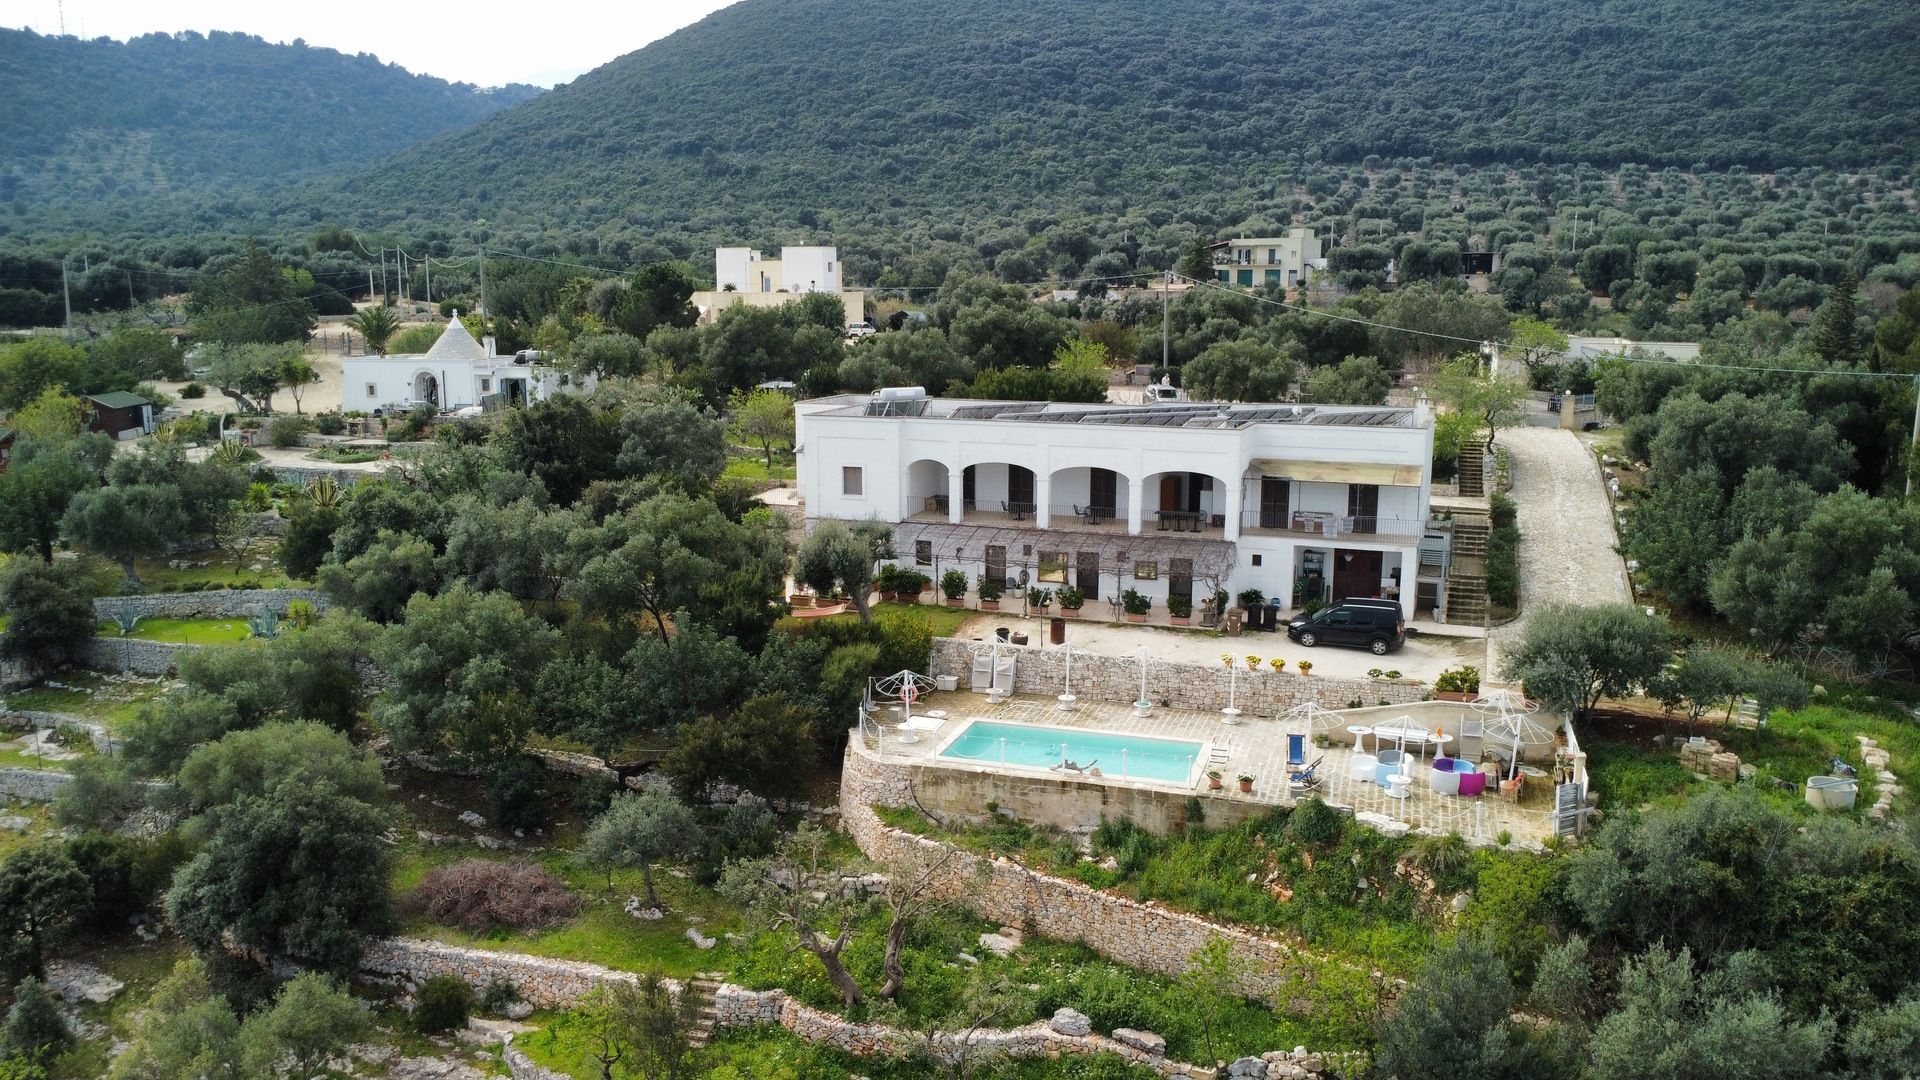 Villa da 500mq con piscina Vista mare a Monopoli, Puglia | luxforsale.it